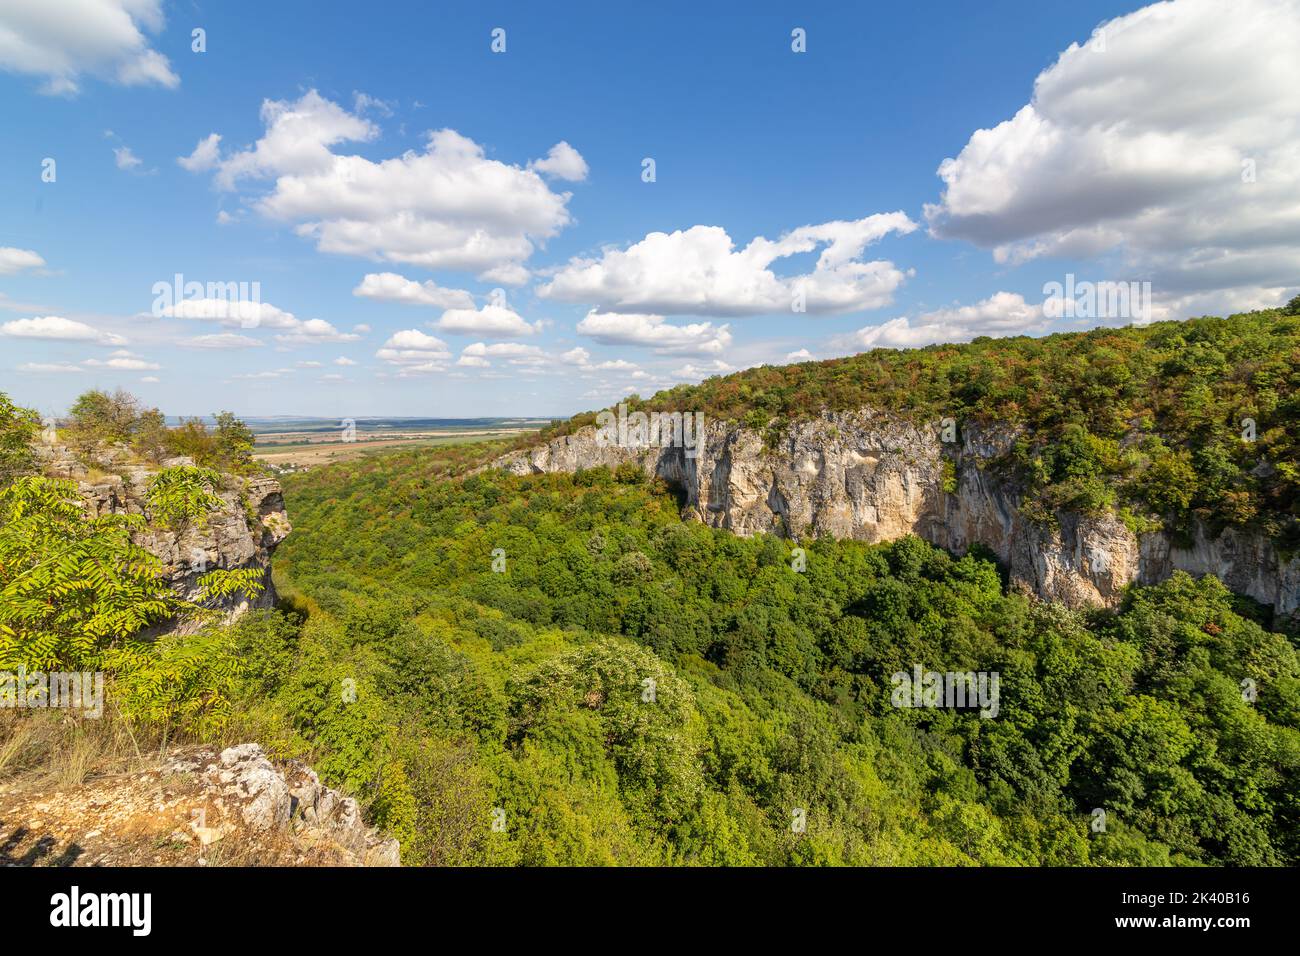 La nature de la région de Lovech en Bulgarie. La plaine du Danube et le canyon de Stara Planina. Banque D'Images